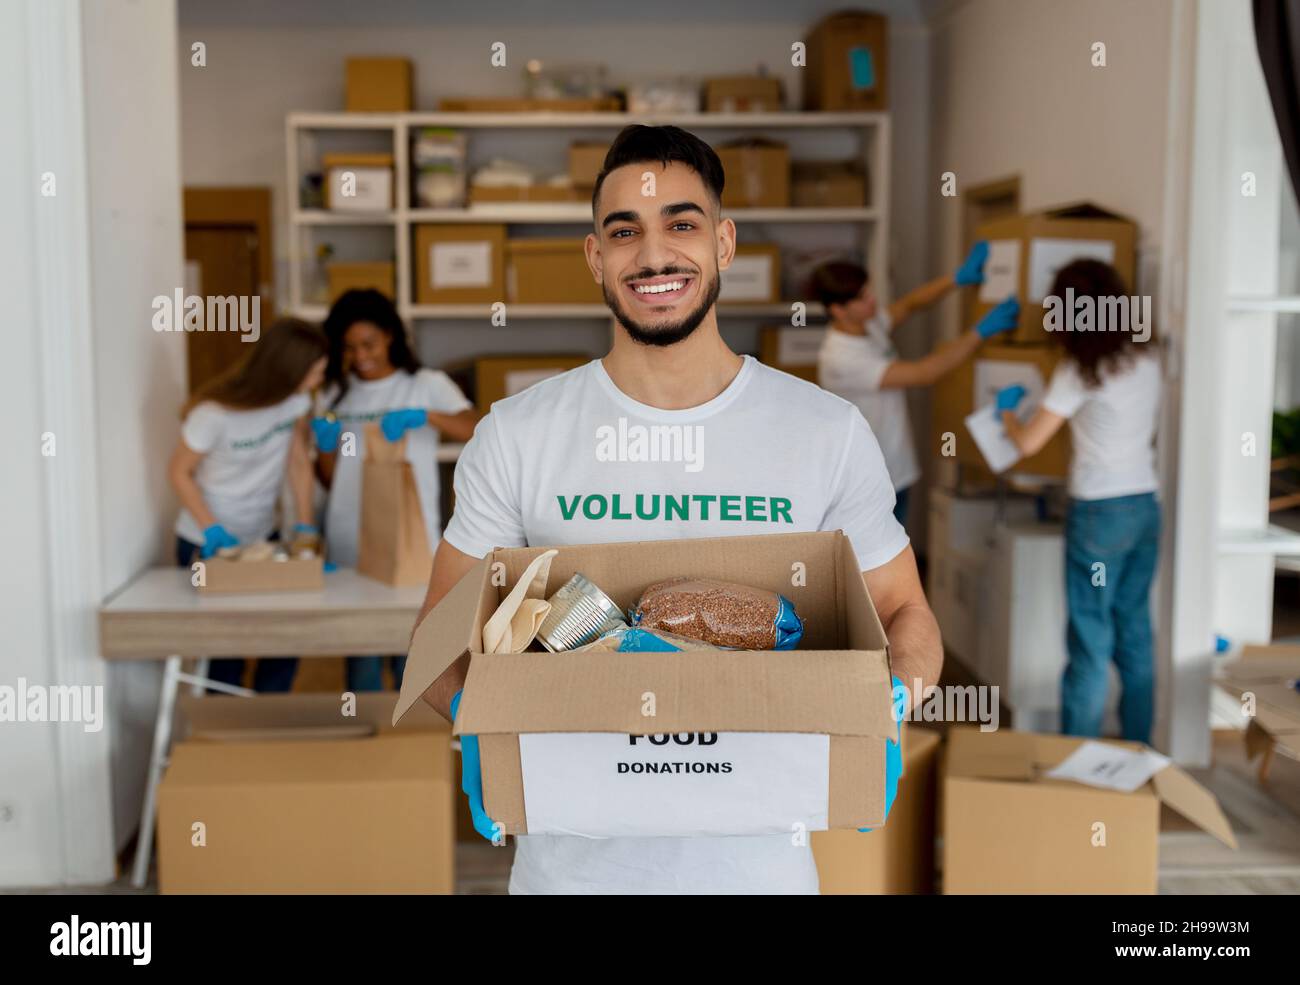 Aide humanitaire.Un volontaire arabe masculin tient une boîte en carton avec des produits, travaillant avec des collègues au centre de charité Banque D'Images